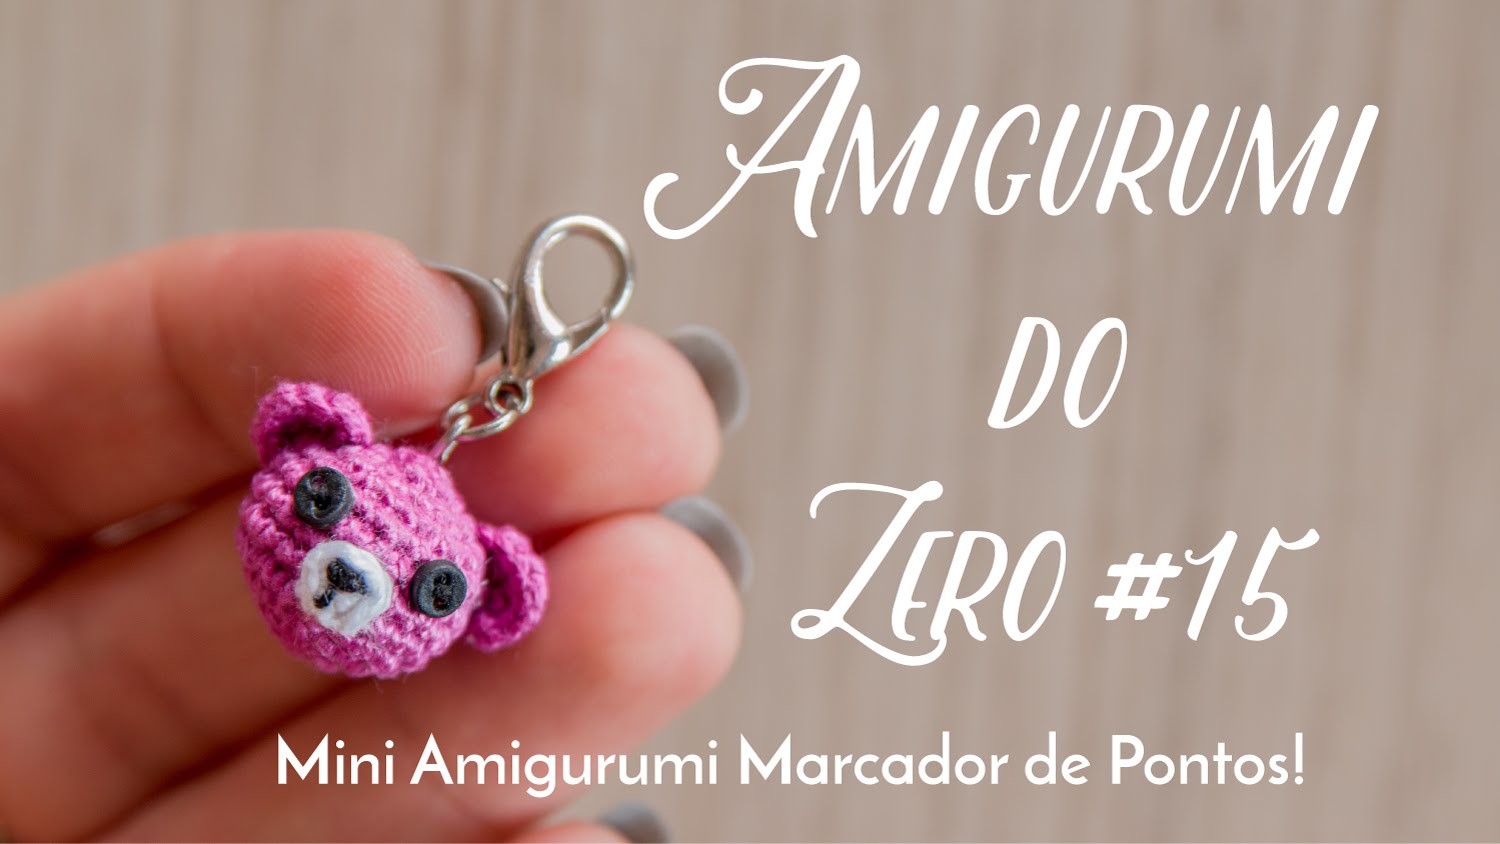 Amigurumi do Zero #16 - Mini Amigurumi Marcador de Pontos